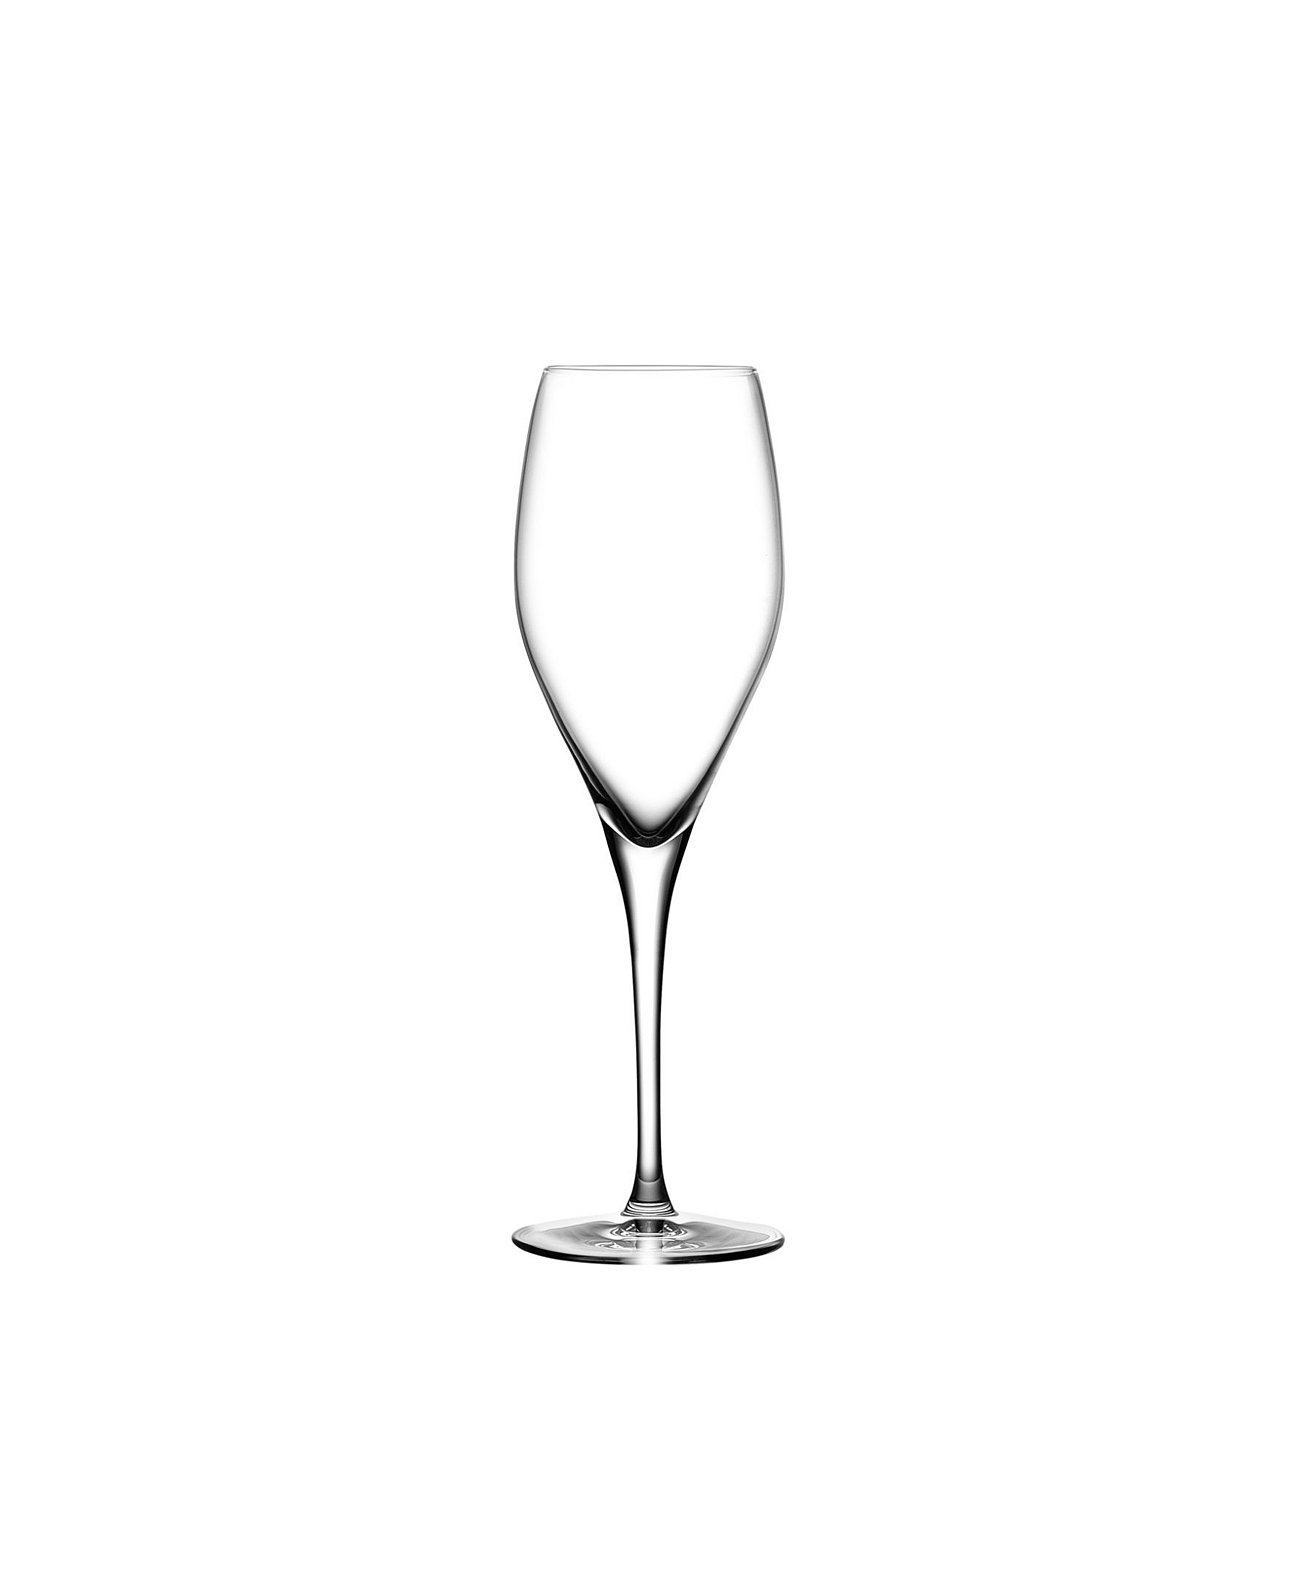 Винтажные бокалы для шампанского, набор из 2 шт. Nude Glass